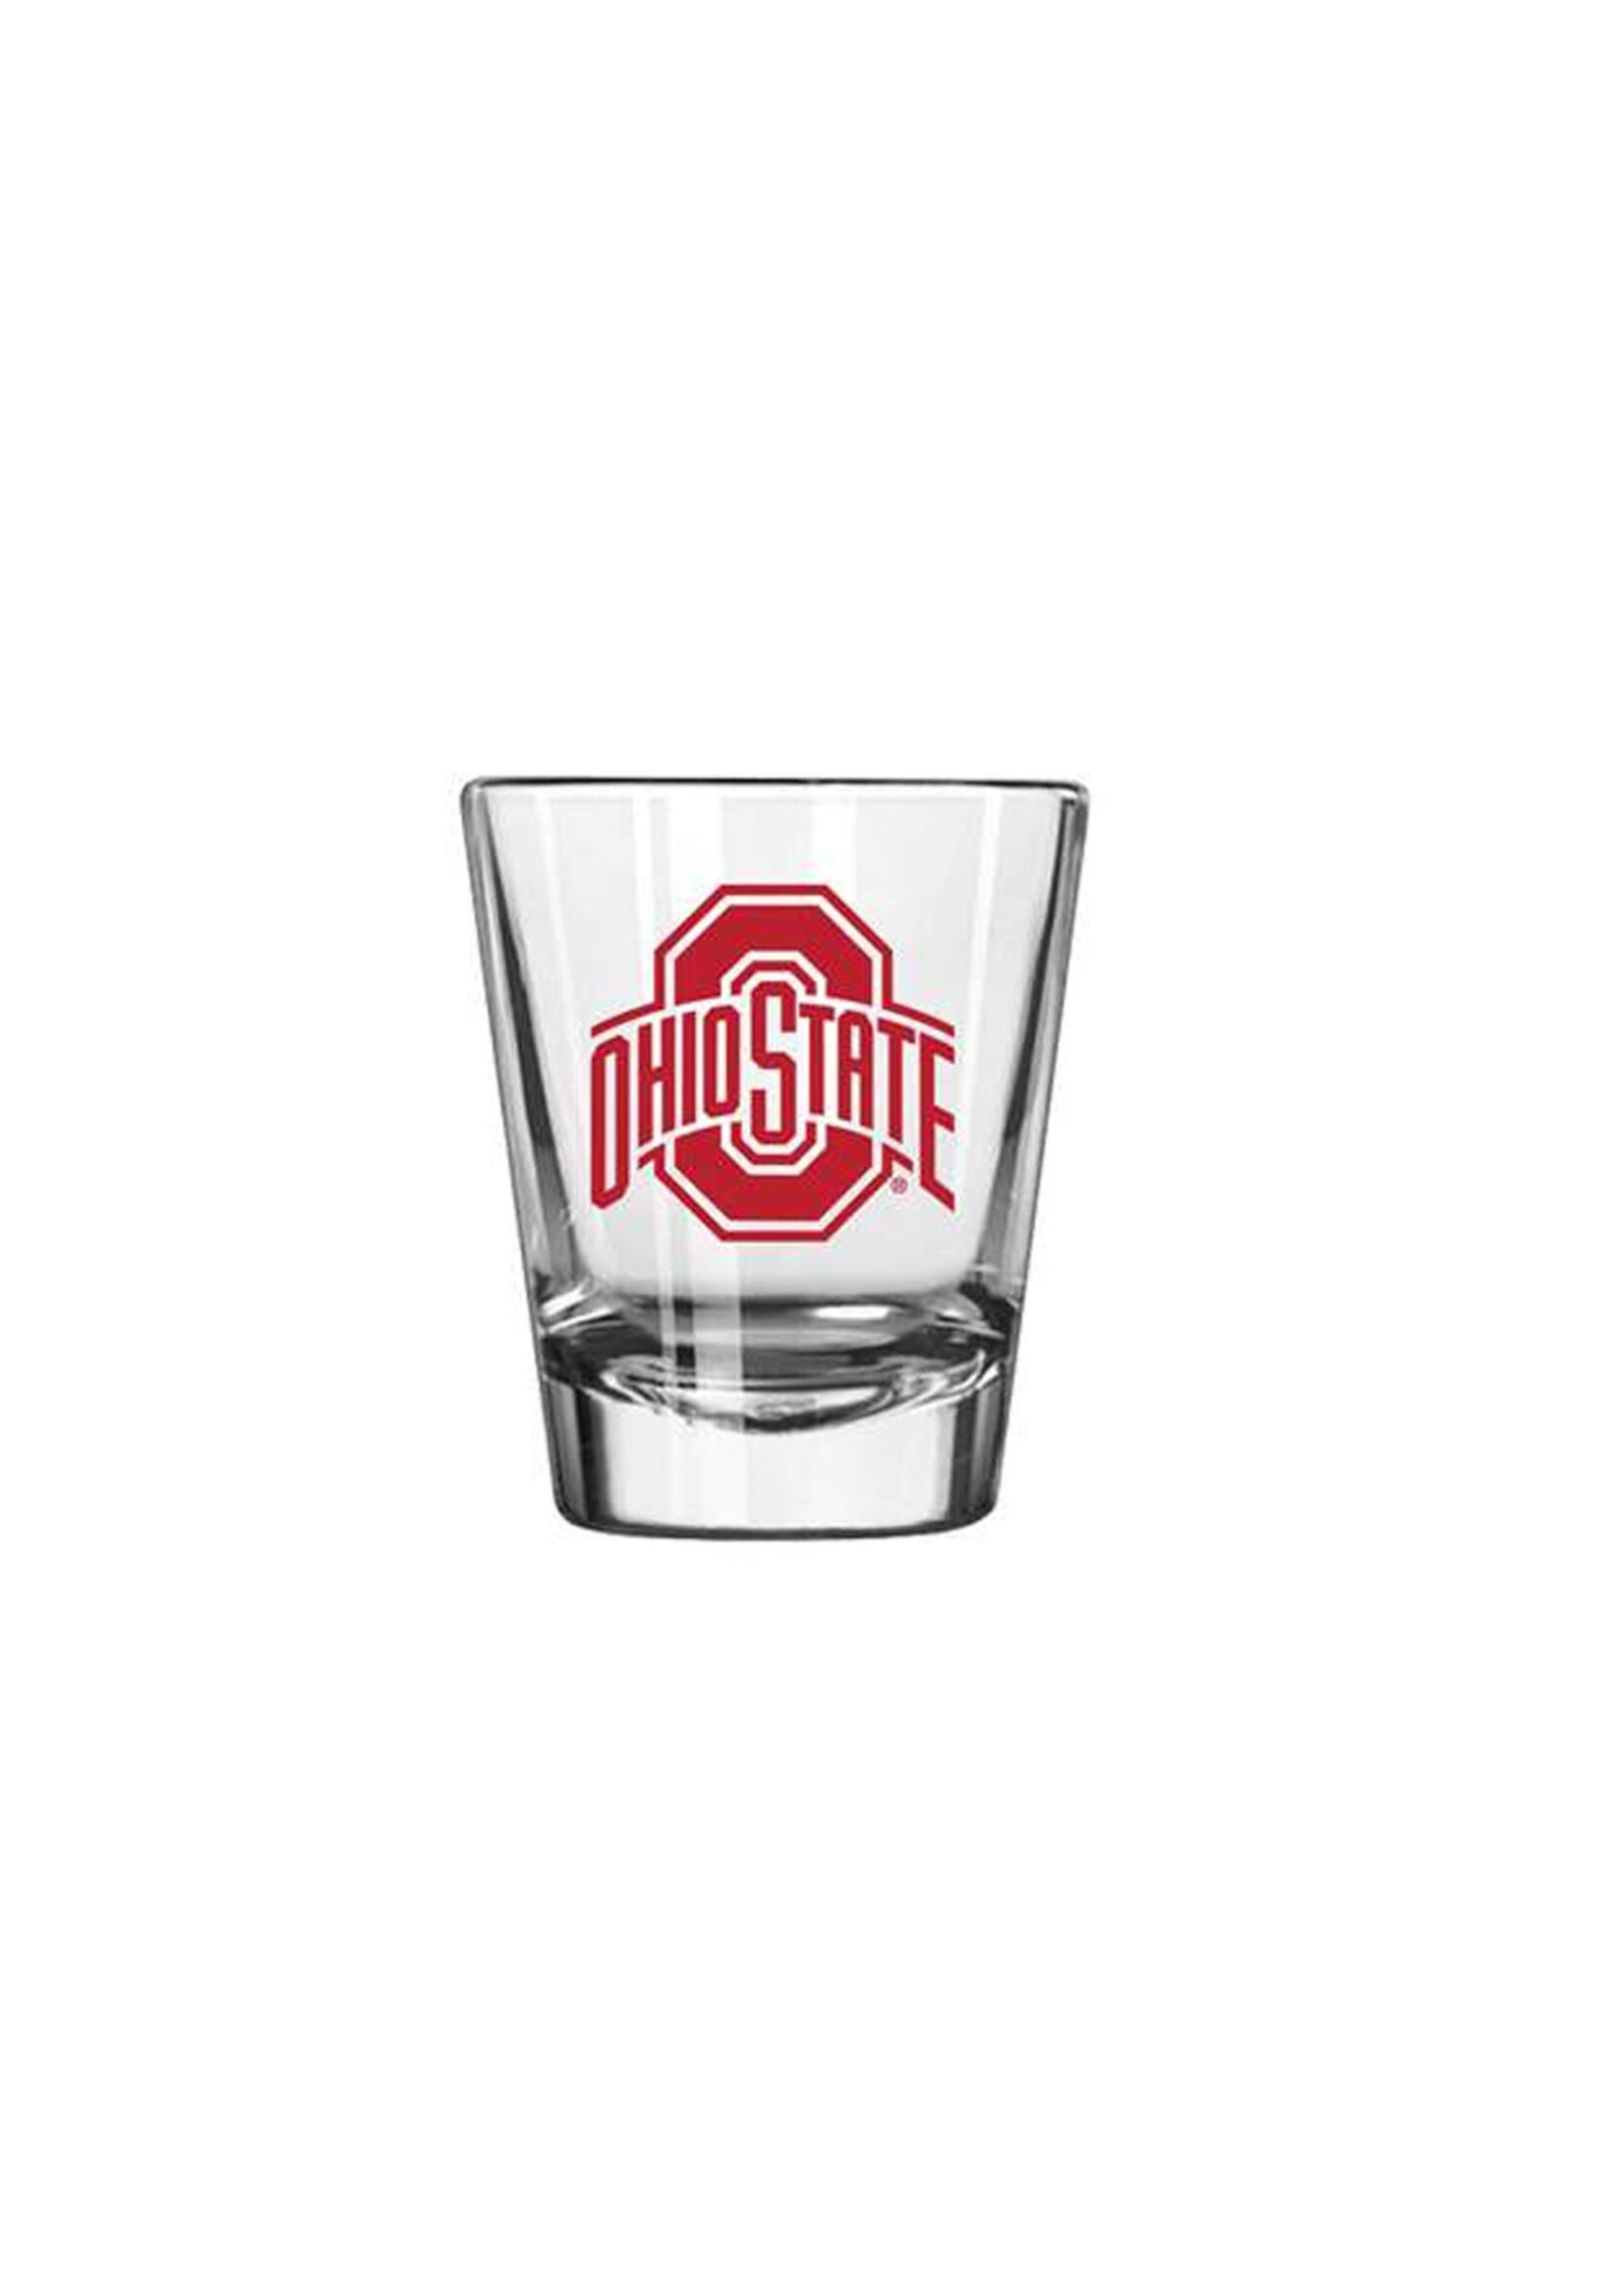 Ohio State Buckeyes 2oz Gameday Shot Glass